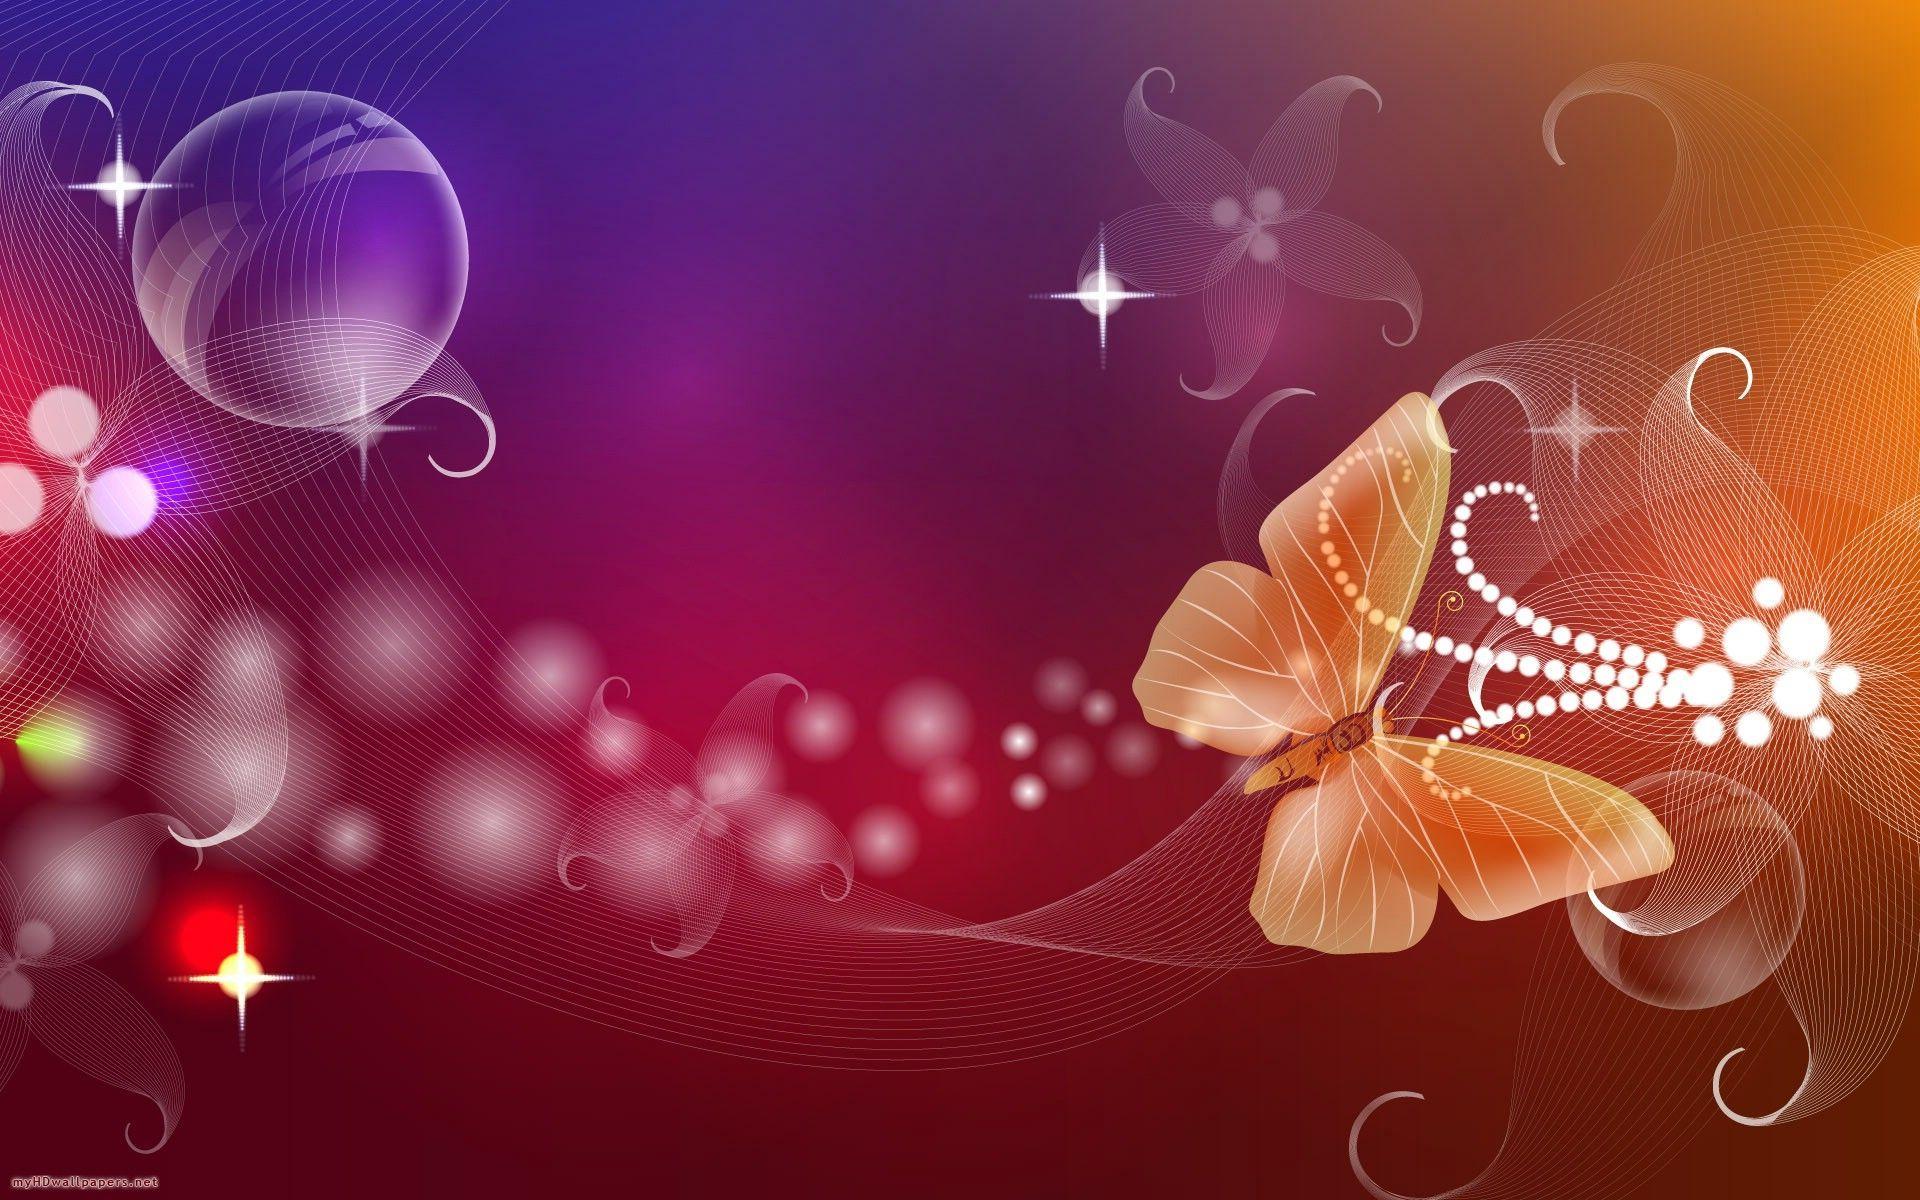 Dancing orange butterfly Desktop Wallpaper, HD Wallpaper